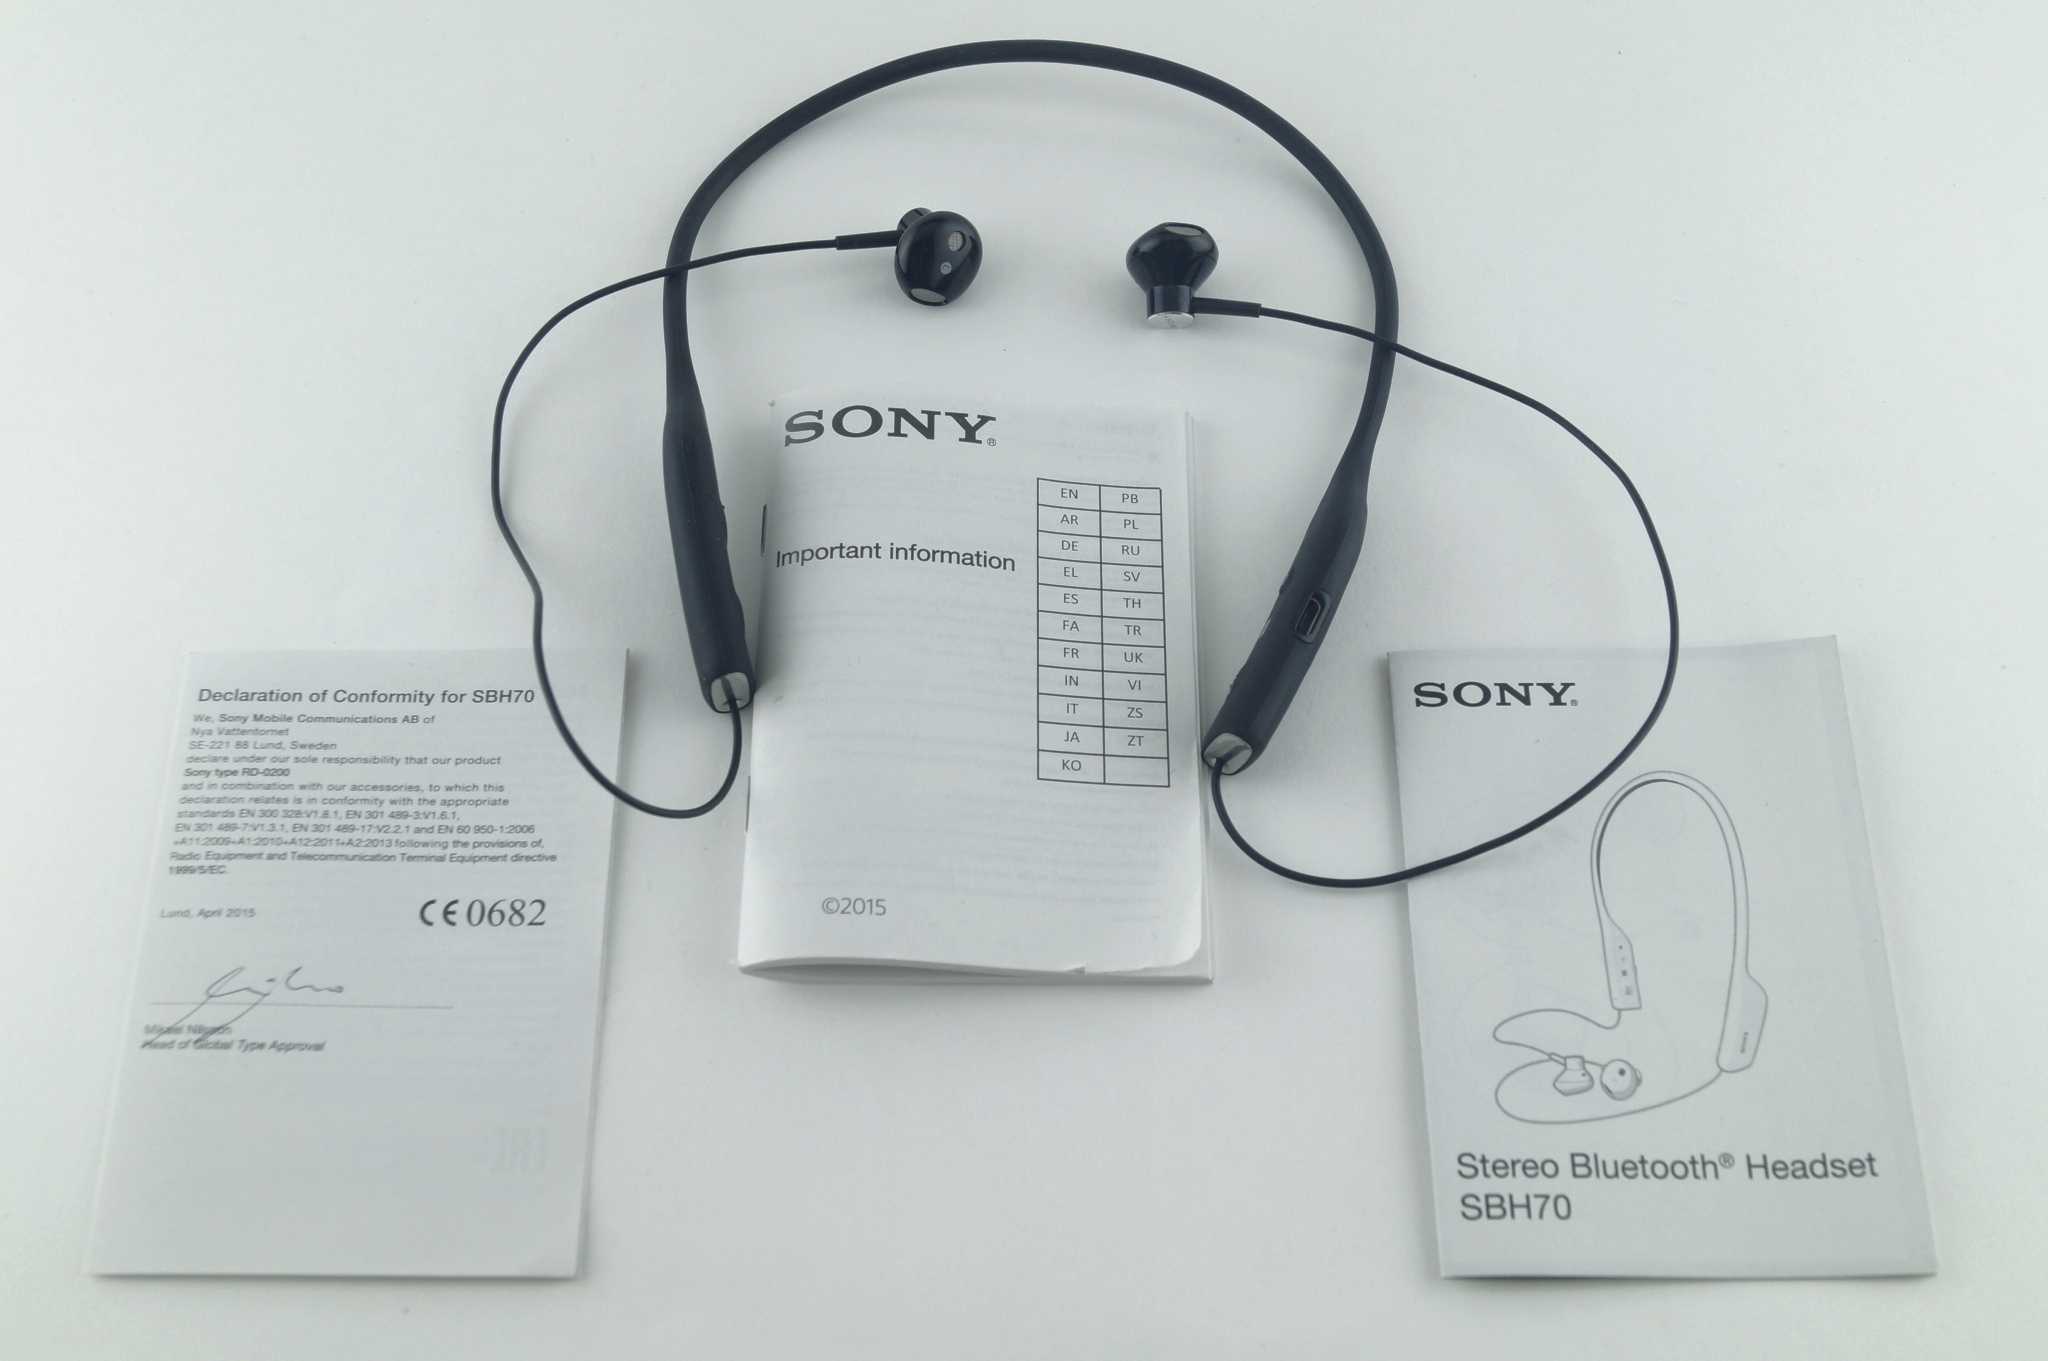 Если вы дня не представляете без музыки, то Bluetooth гарнитура Sony SBH70 вам точно пригодится Легкая дужка практически не ощущается на шее, трек переключаются нажатием кнопки Ответить на звонок также можно, не доставая телефон из кармана – через наушник